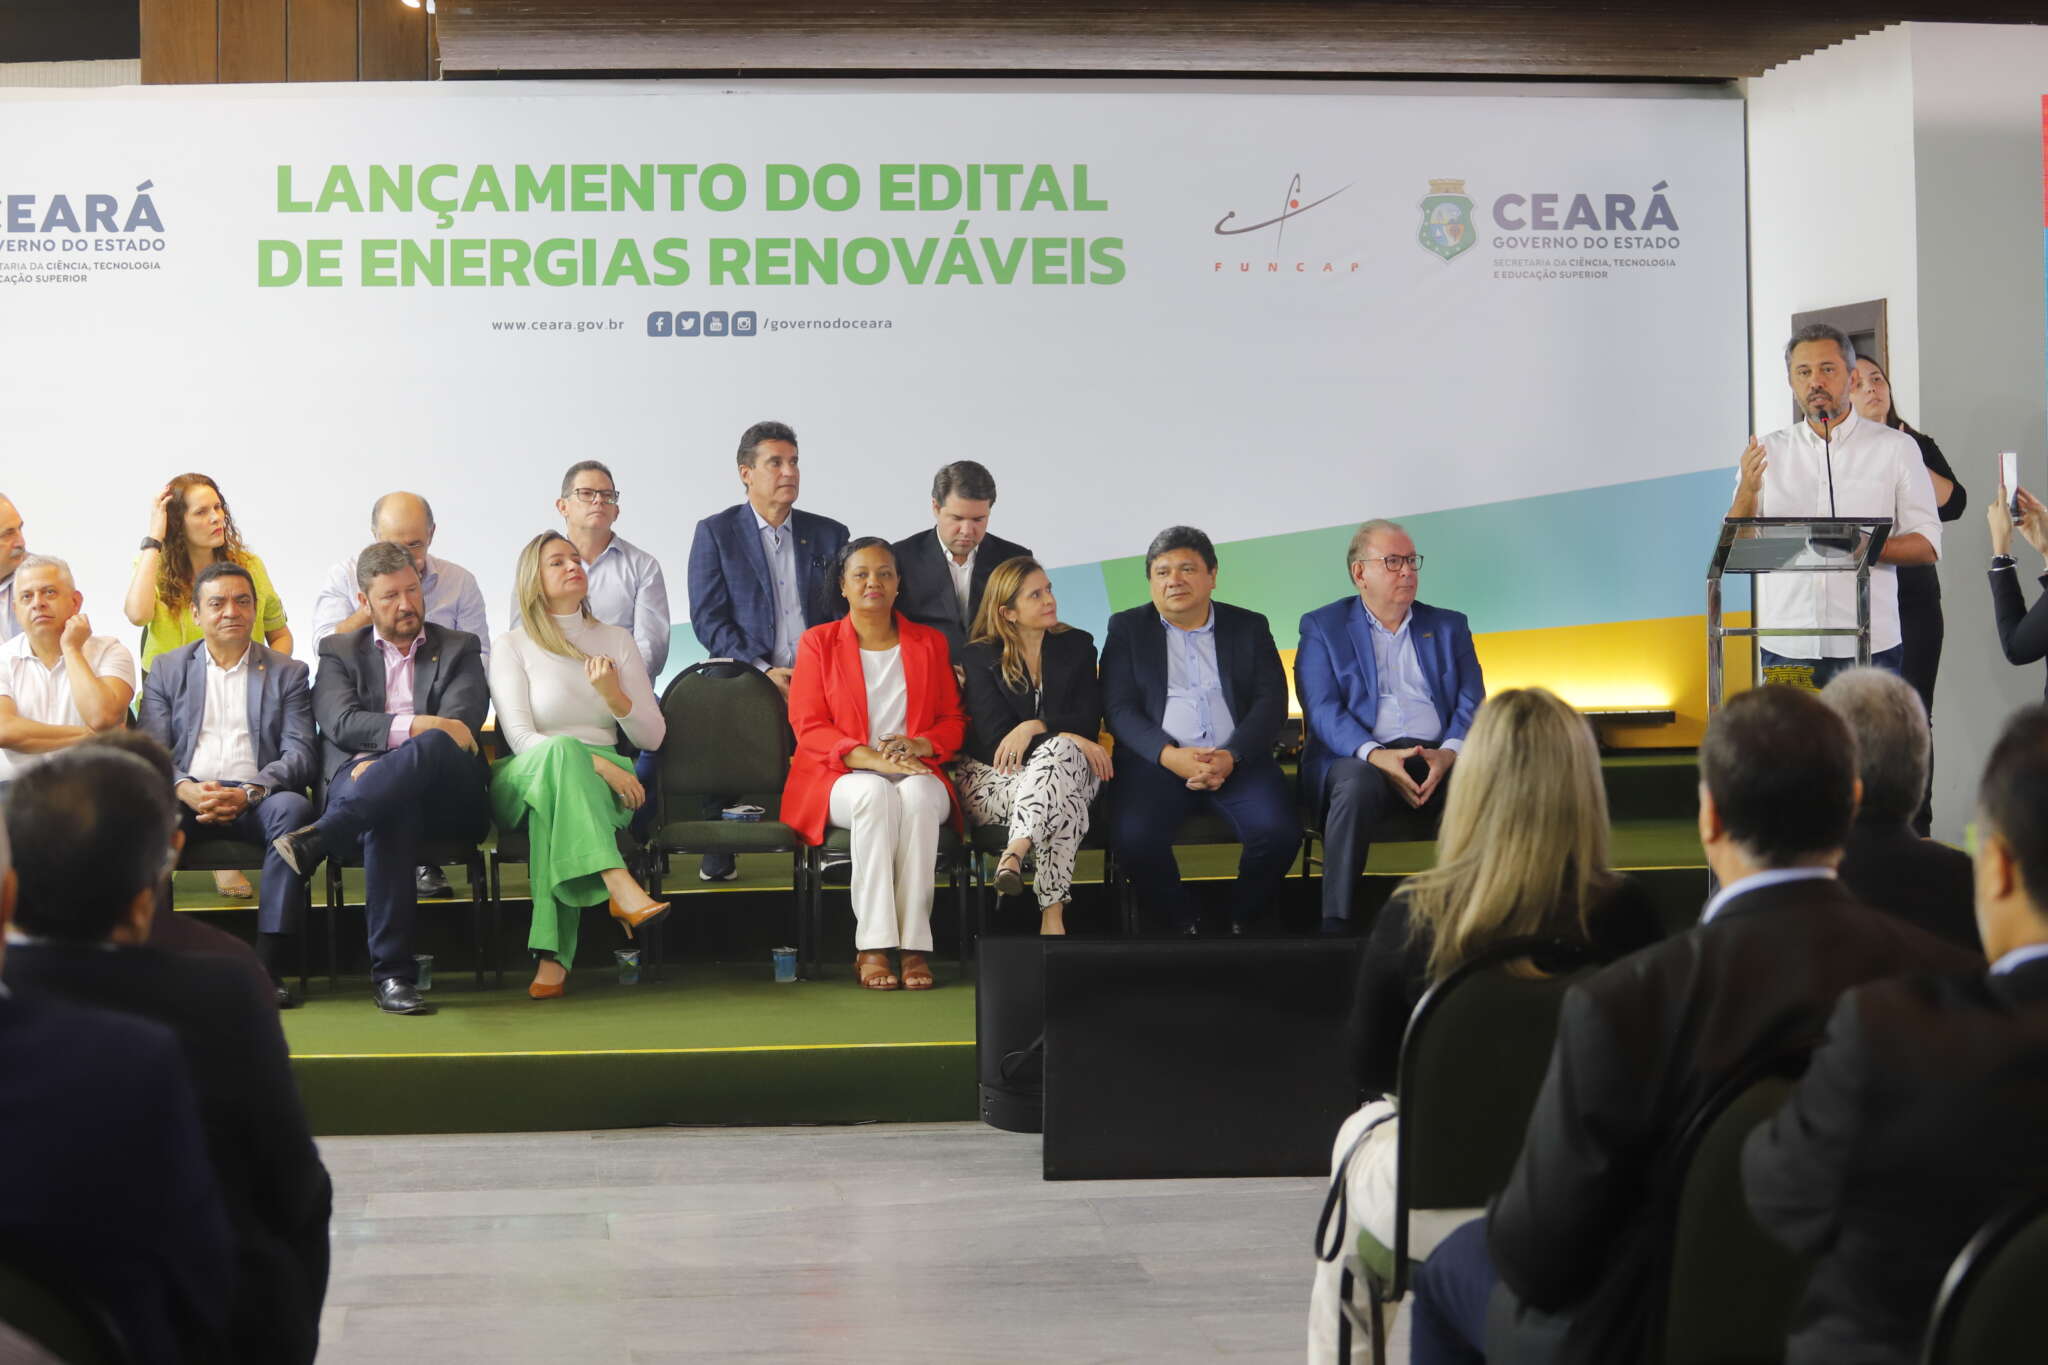 Para reforçar pesquisas em energias renováveis, Funcap lança edital de até R$ 16 milhões